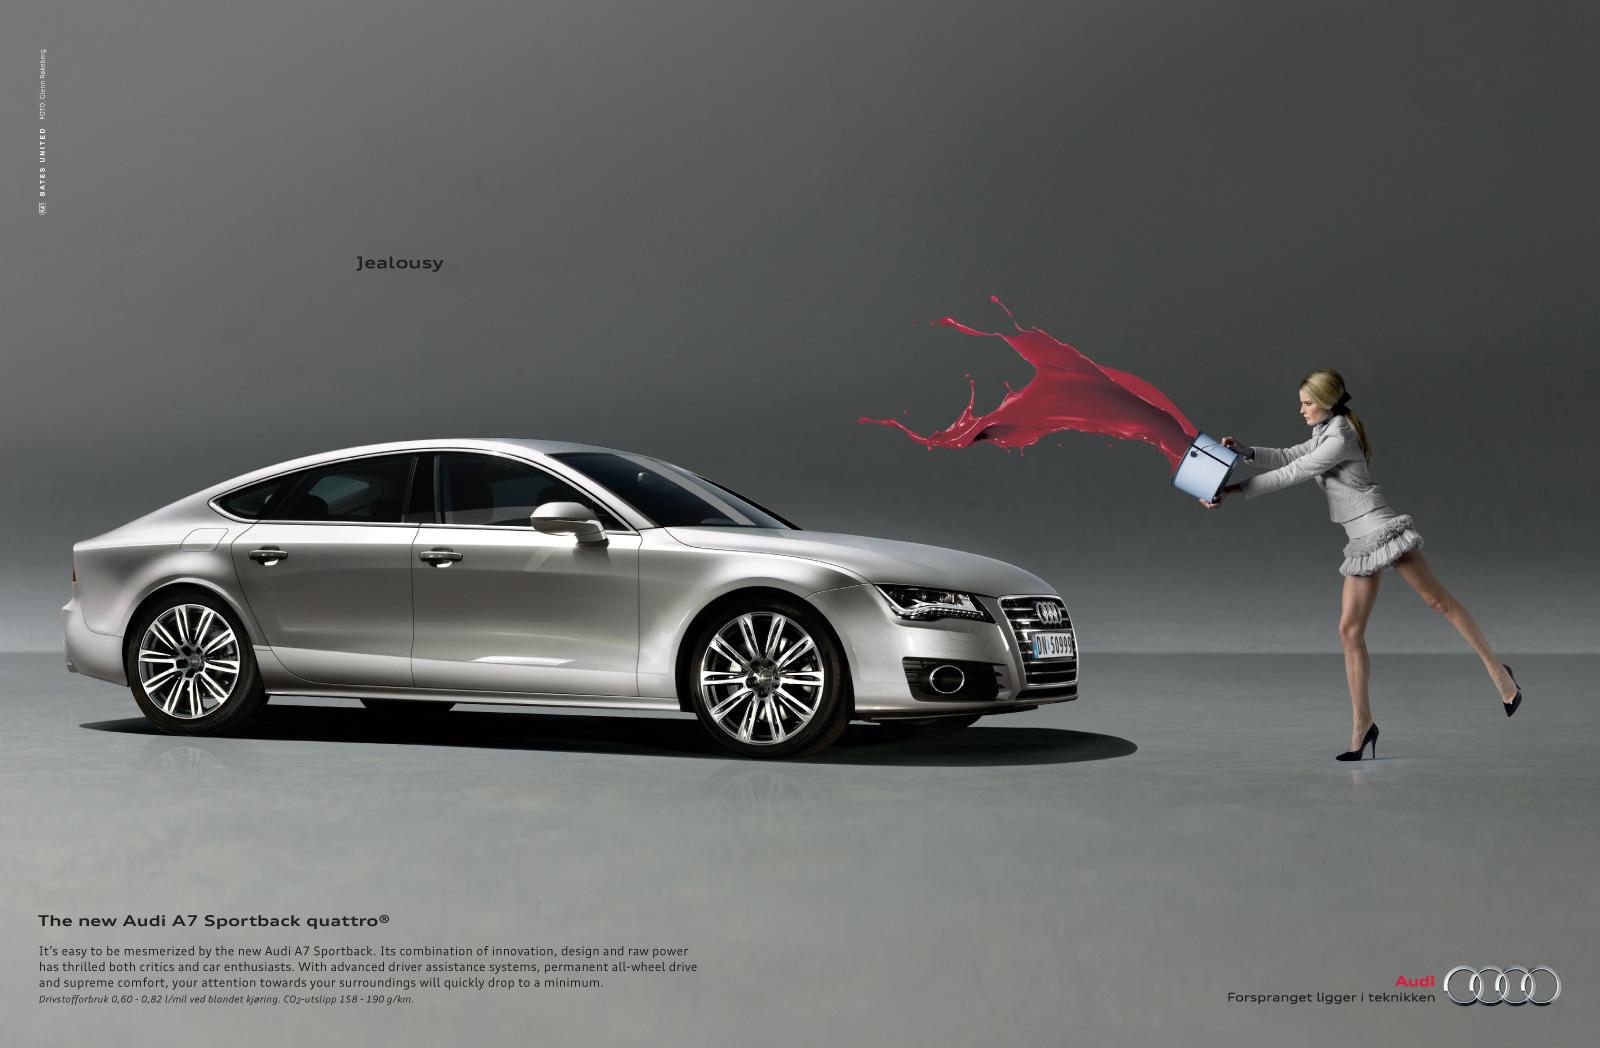 Audi A7 Ad (April, 2011): Jealousy